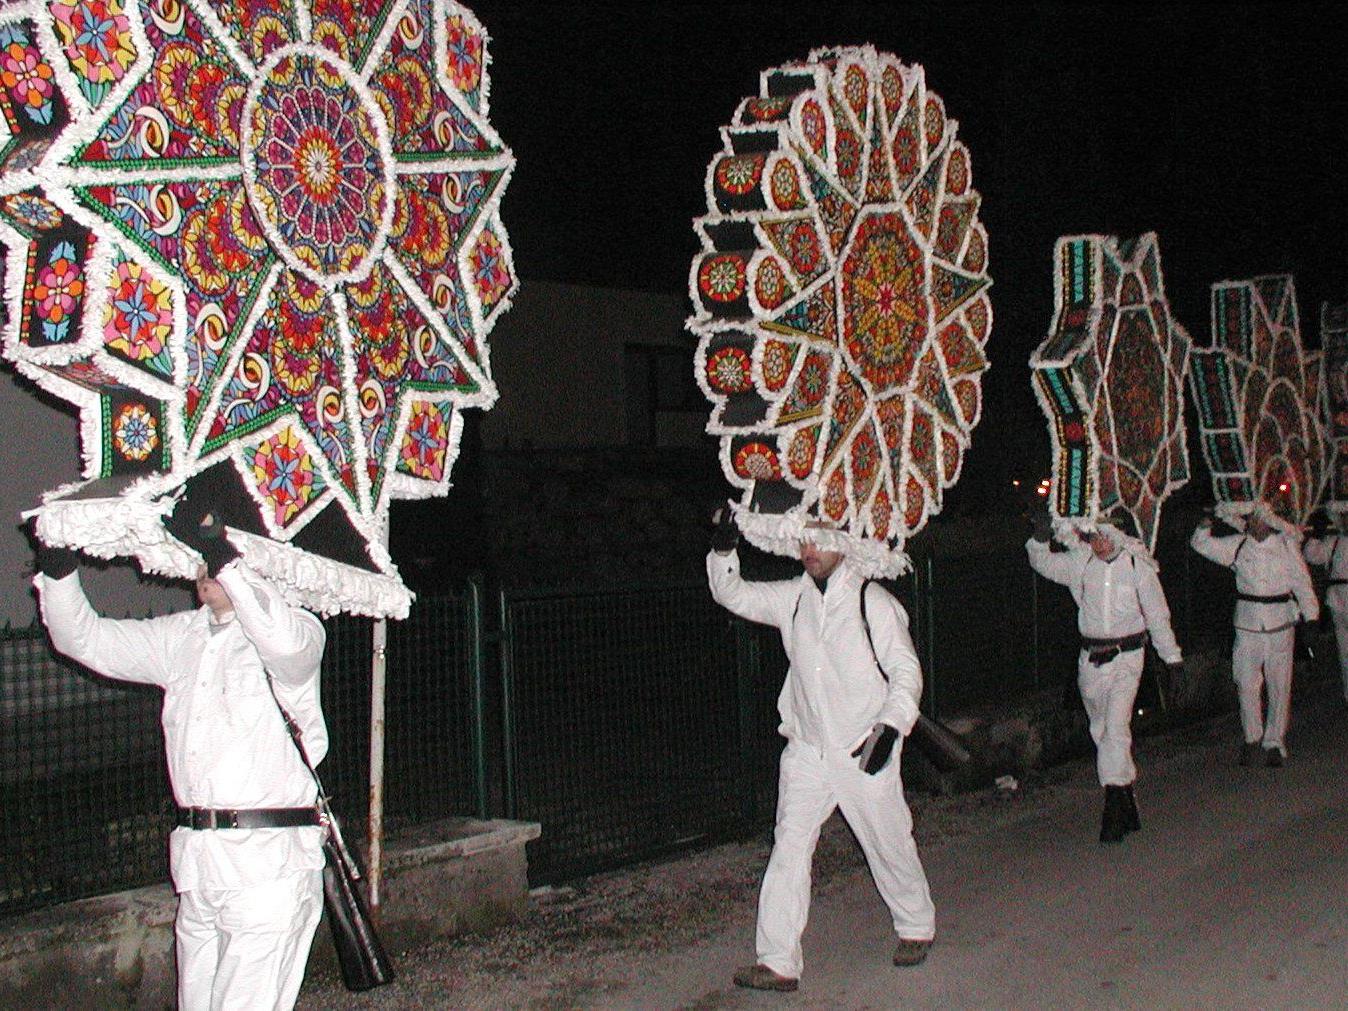 "Glöckler" in weißen Gewändern und mit großen Kappen - bebildert mit traditionellen Motiven - und Schellen treiben in der letzten Raunacht vor dem Dreikönigstag die bösen Geister aus.